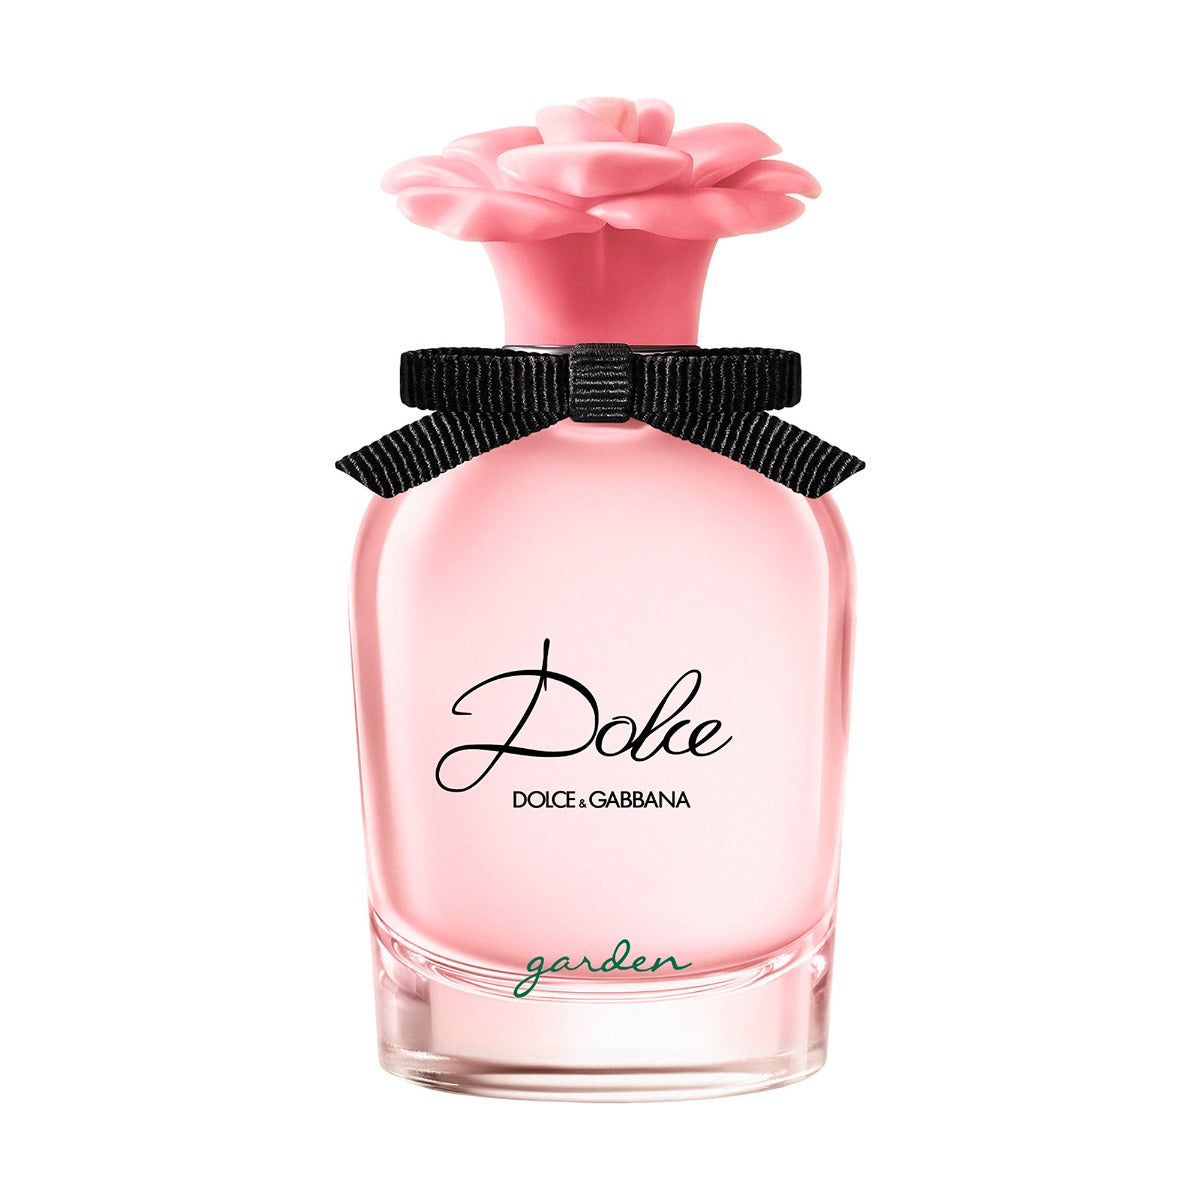 DOLCE & GABBANA DOLCE GARDEN FOR WOMEN EDP 50 ml - samawa perfumes 